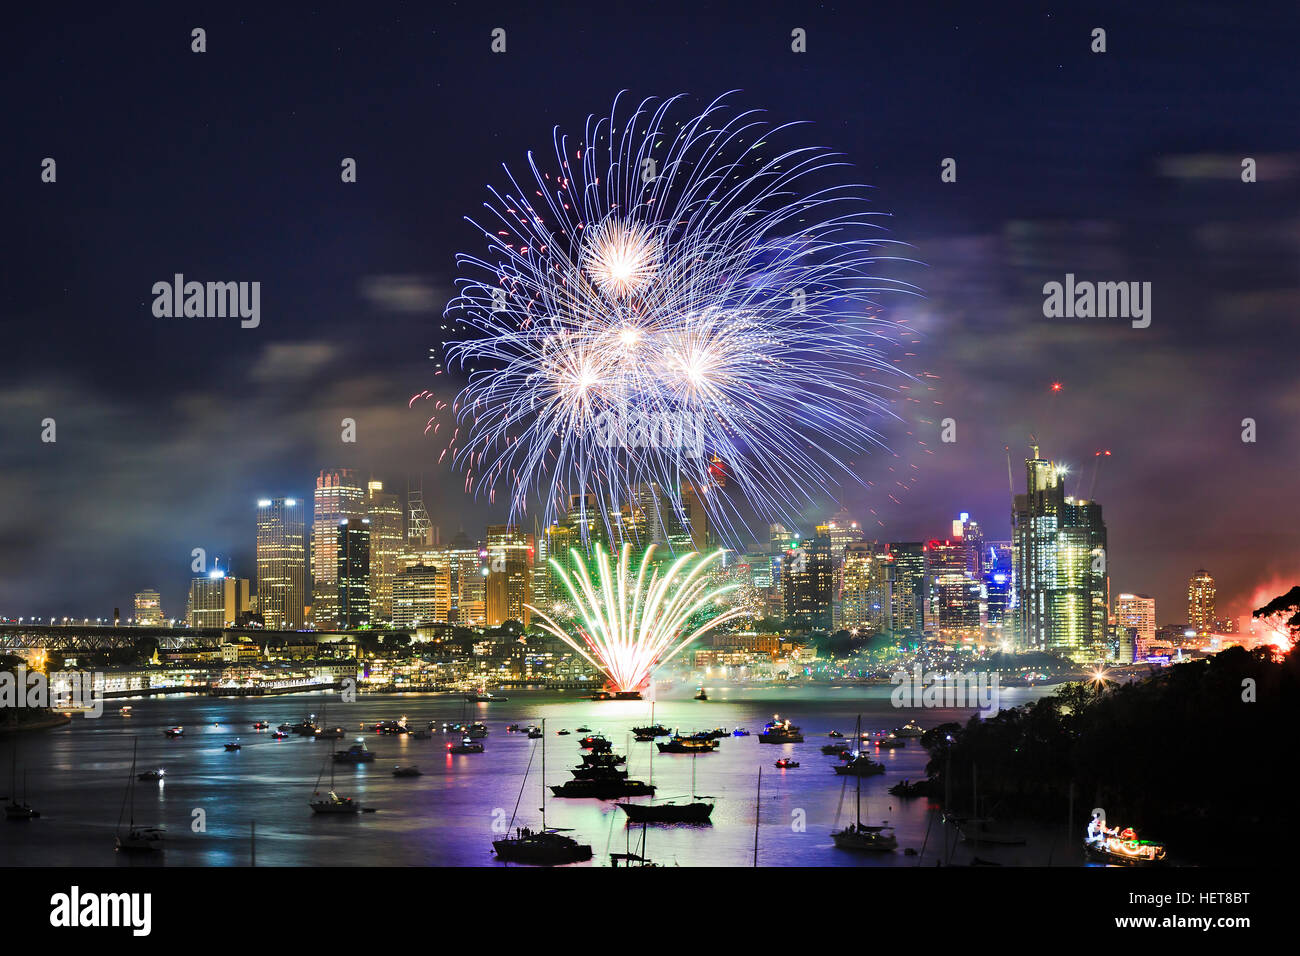 Ville de Sydney CBD au Nouvel an d'artifice au-dessus de l'eau encore de port. Boule de lumière bleue s'allume-tours et monuments de la ville au cours de NY light sho Banque D'Images